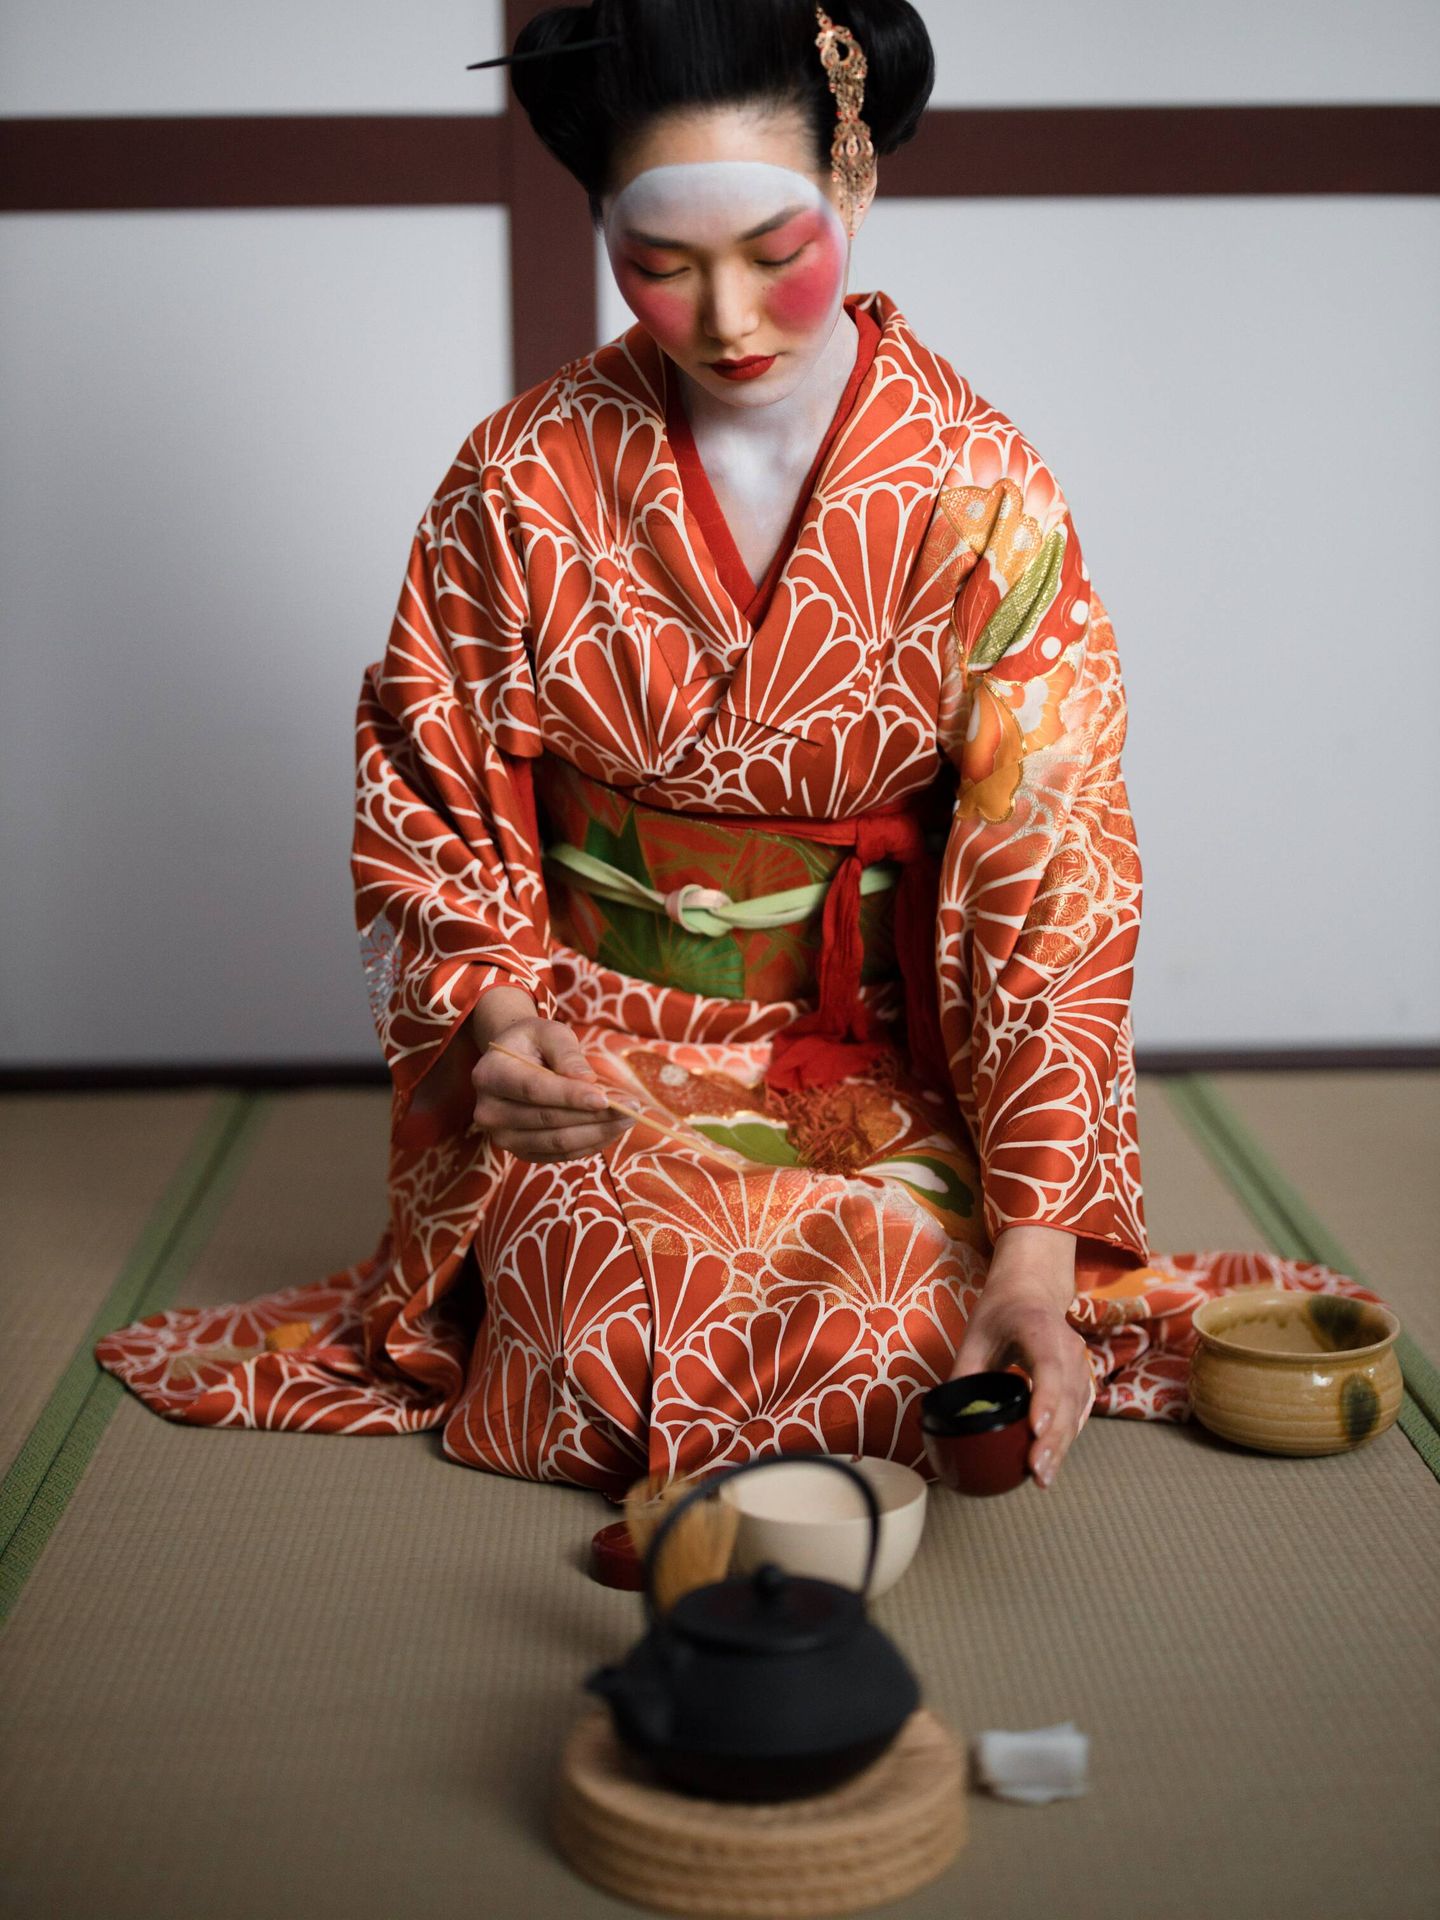 Ceremonia del té japonesa, un arte milenario. (Pexels/cottonbro)